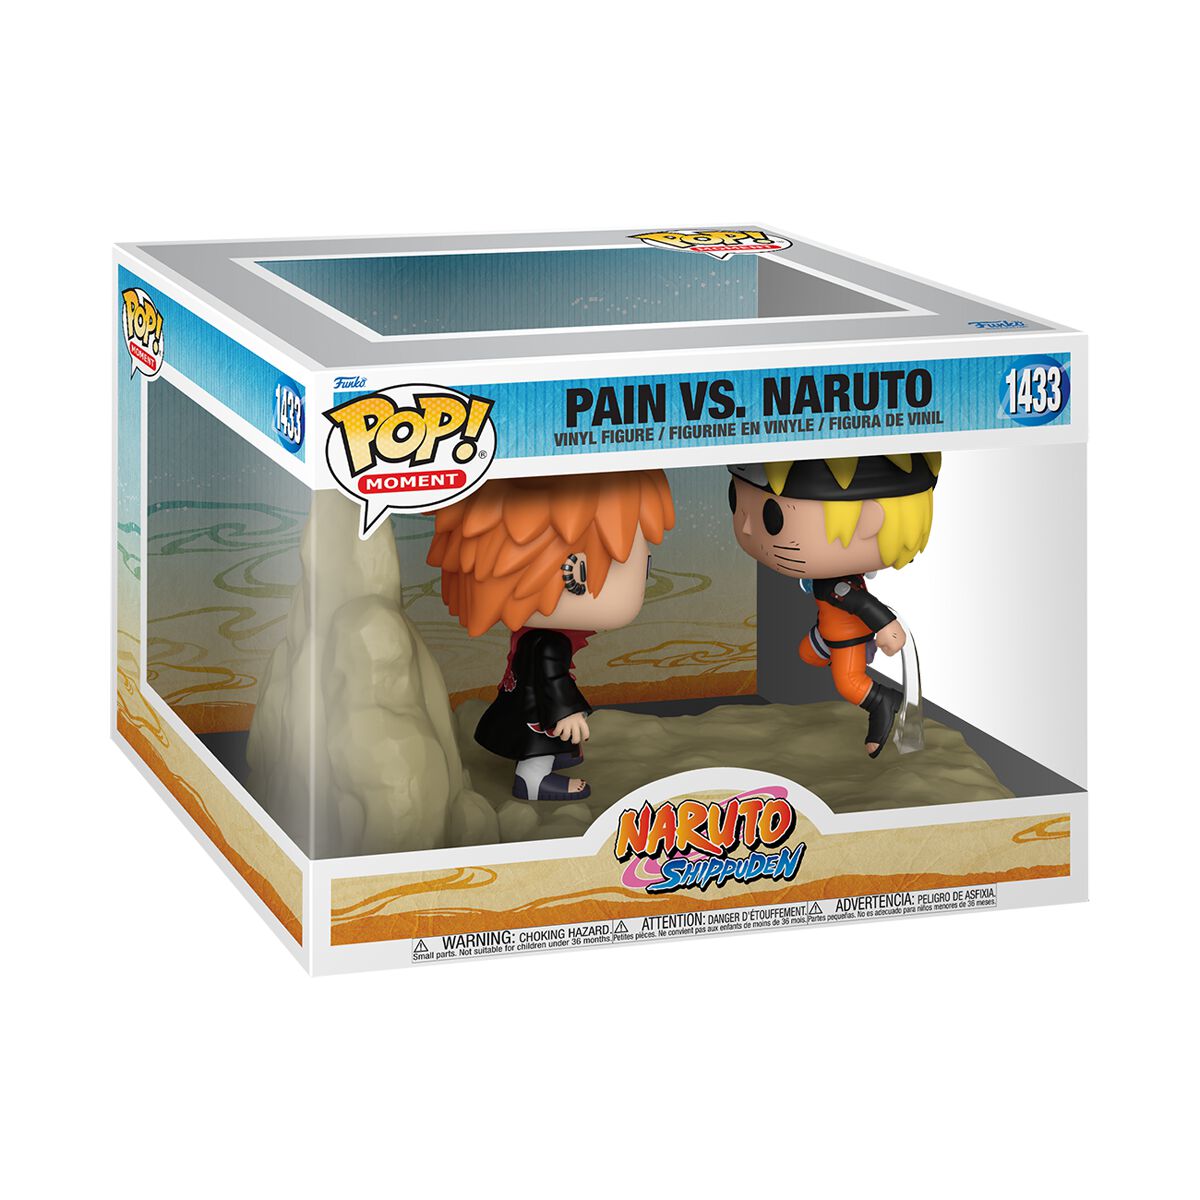 Pain vs. Naruto (Pop! Moment) - Funko Pop! n°1433